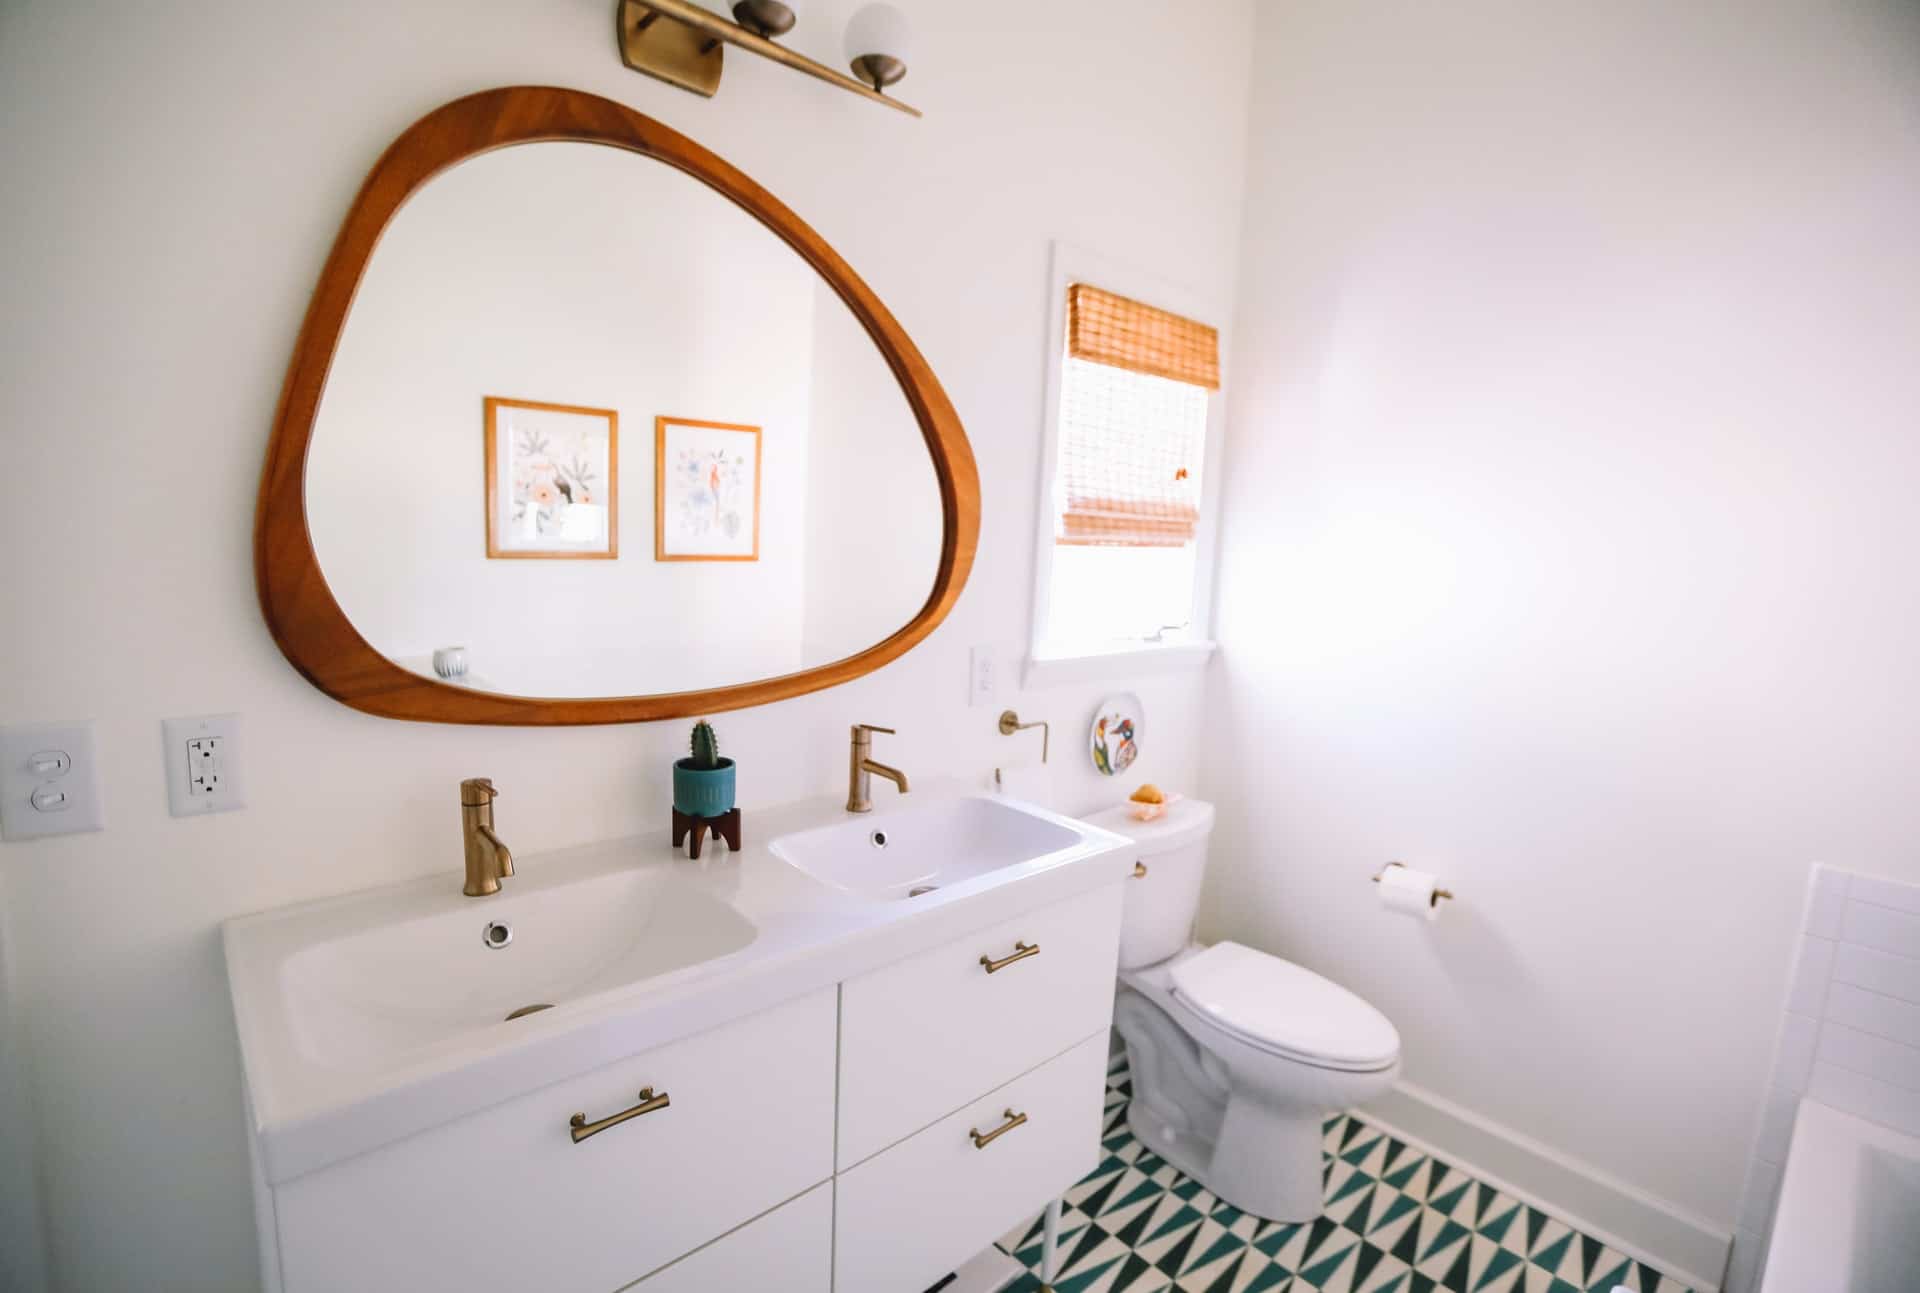 bathroom vanity and sink - Craft KB